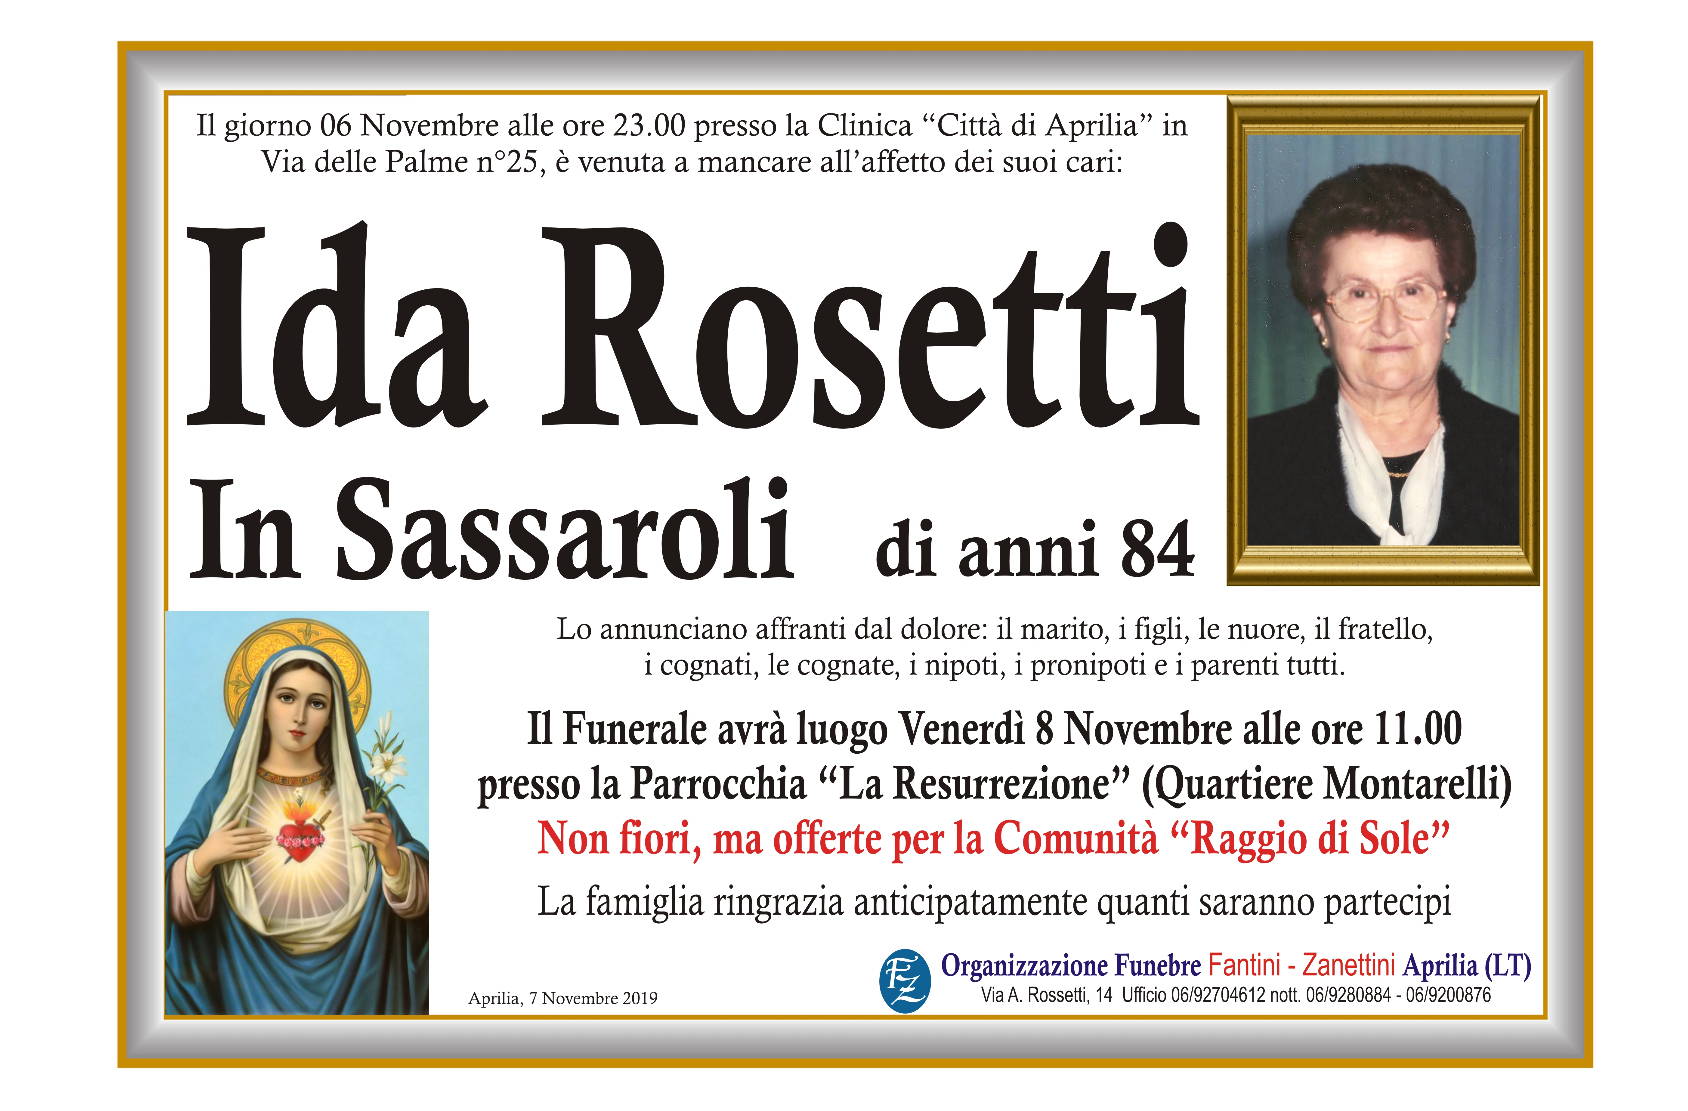 Ida Rosetti